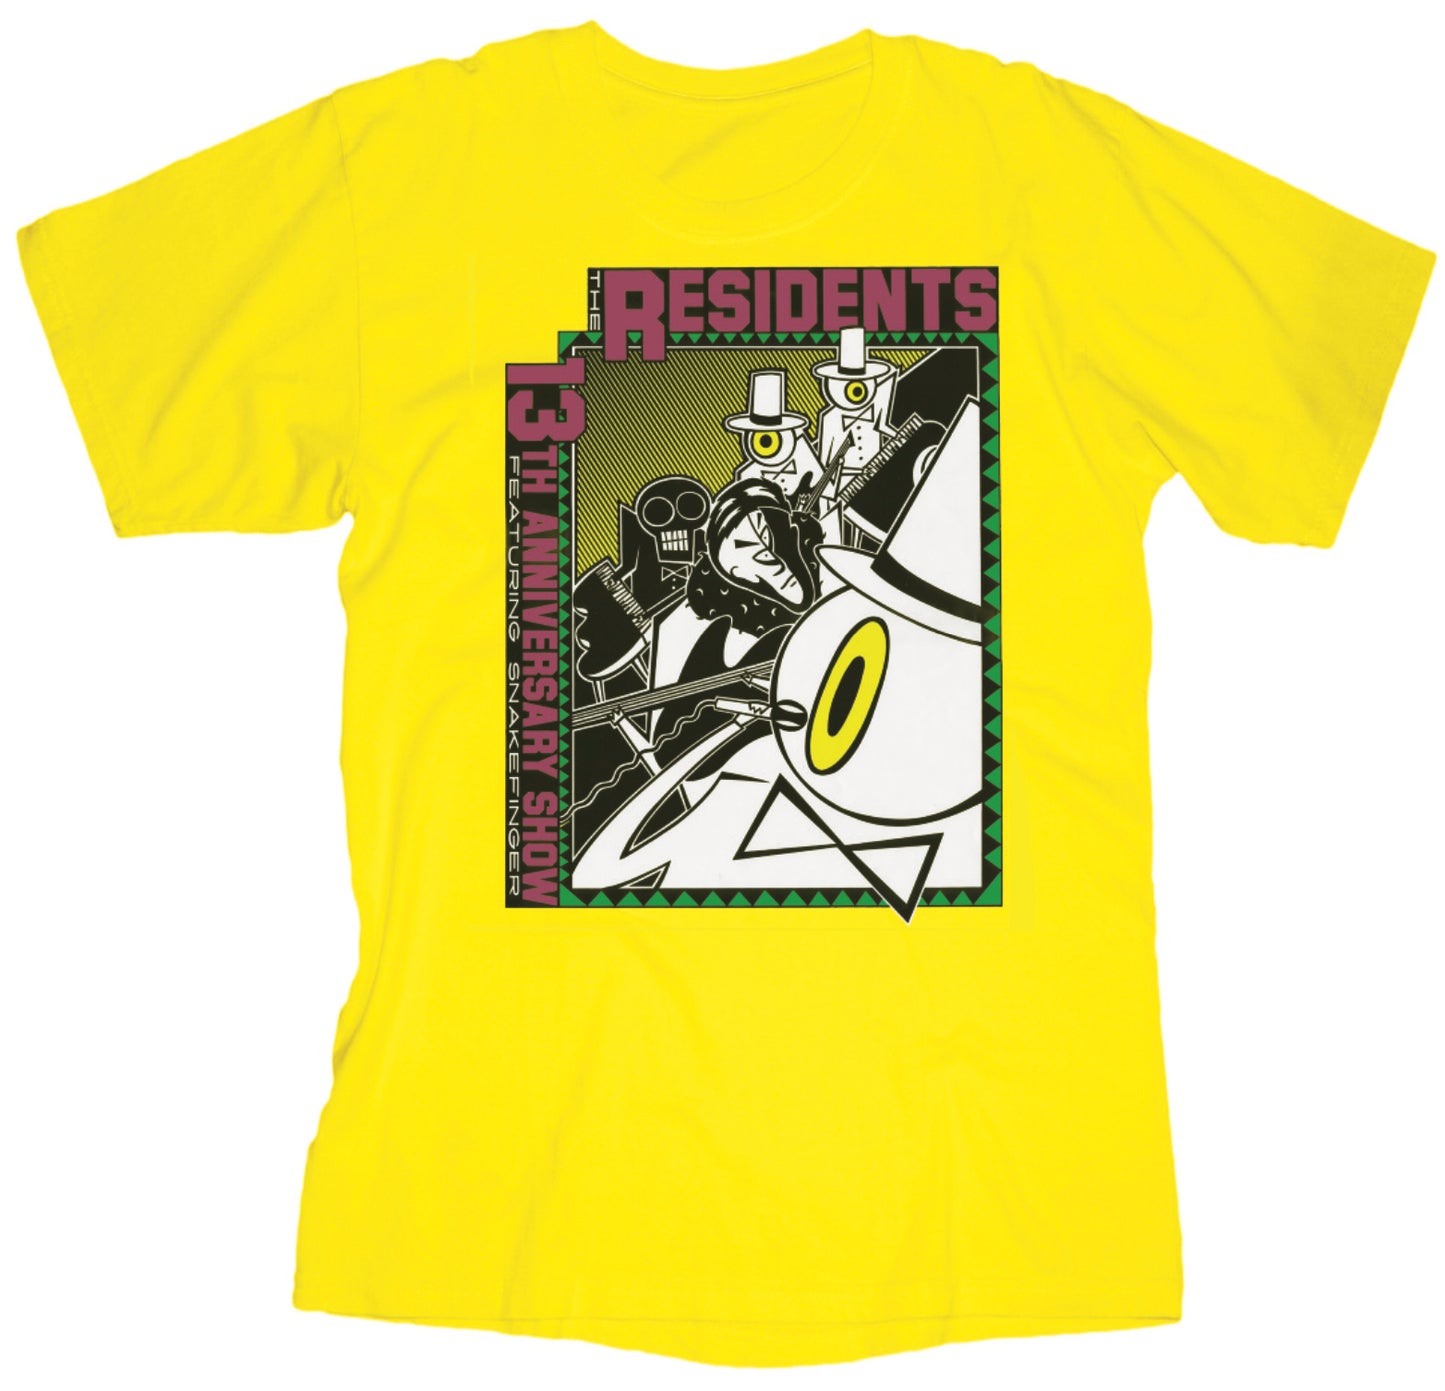 13th Anniversary Tour Yellow T-Shirt